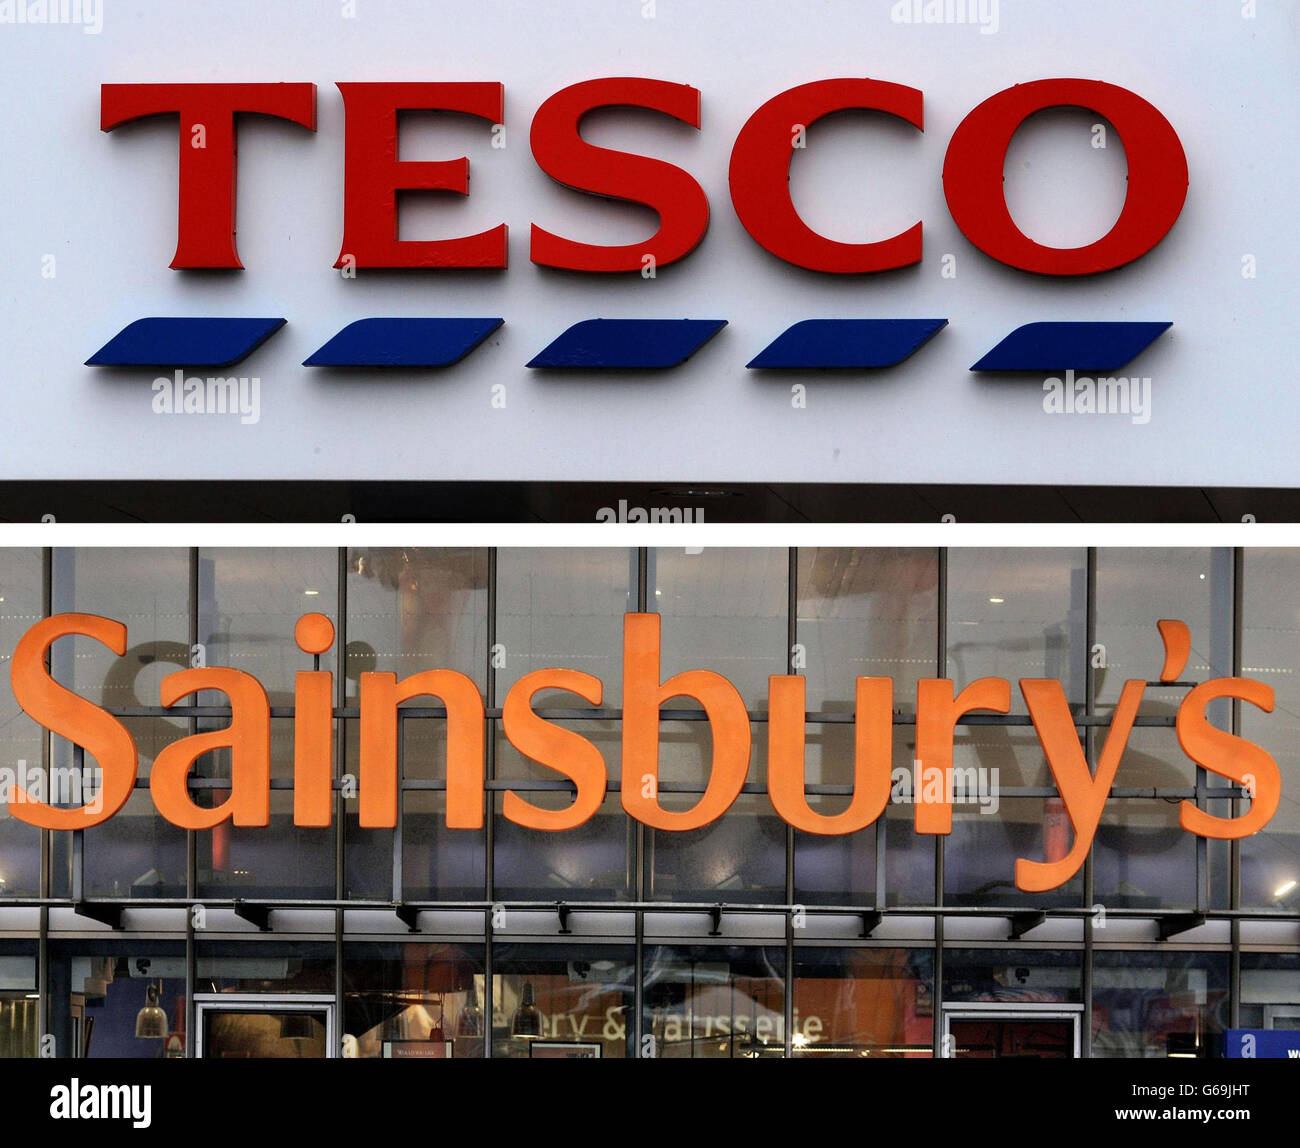 Fichier non daté photos des logos pour Tesco et Sainsbury's.Sainsbury's a lancé une nouvelle attaque contre son plus grand rival Tesco sur une promesse d'adéquation des prix avant une décision imminente de l'organisme de surveillance de la publicité. Banque D'Images